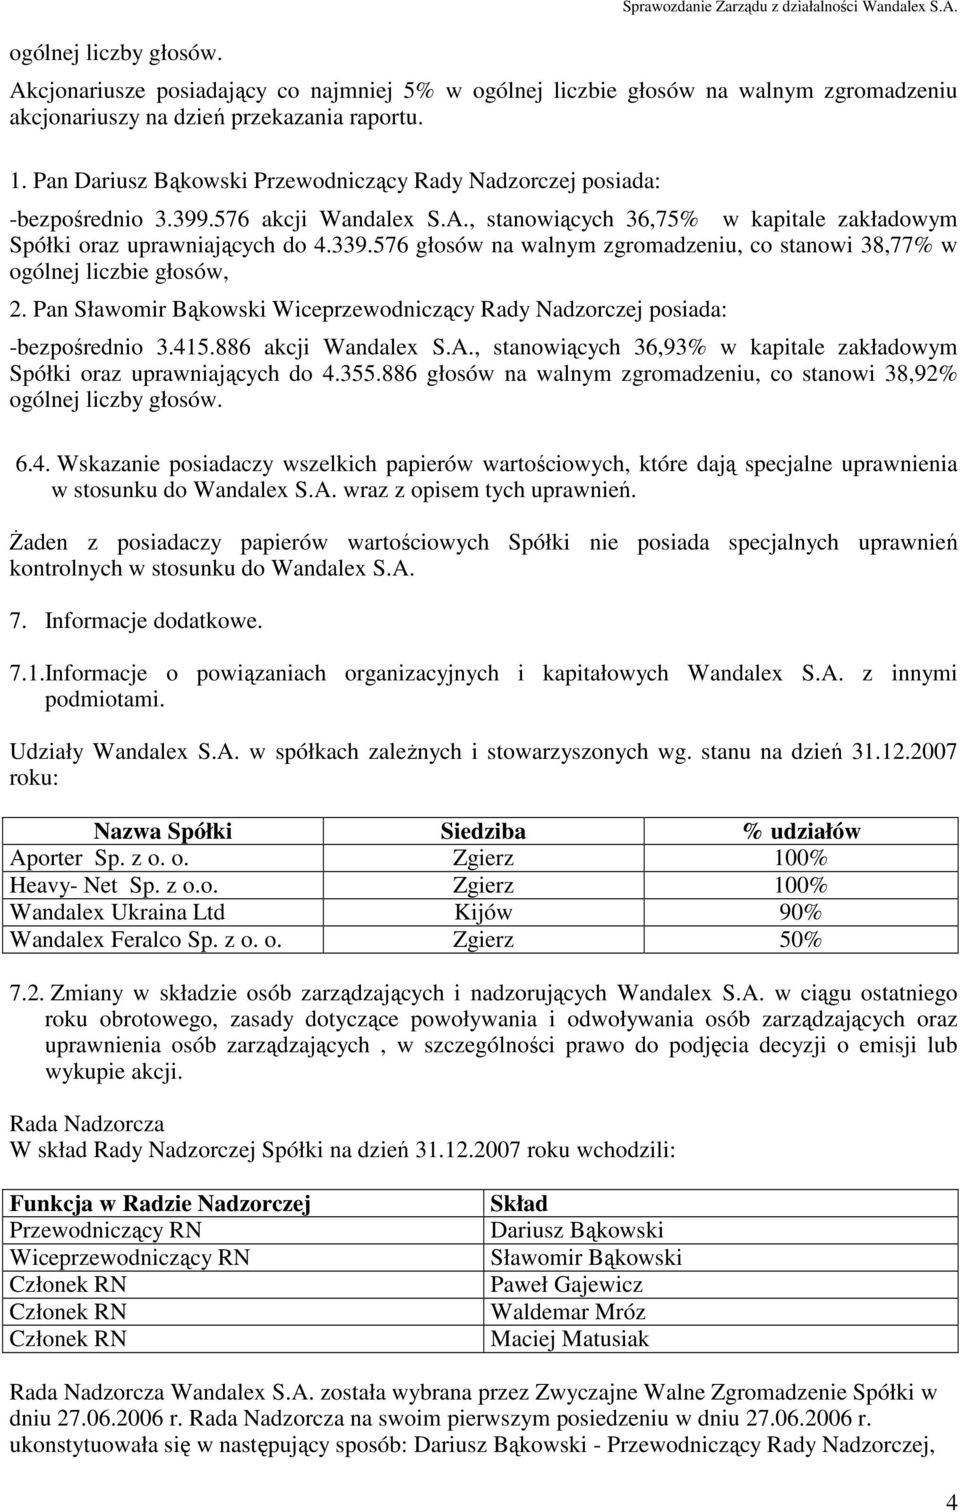 Pan Dariusz Bąkowski Przewodniczący Rady Nadzorczej posiada: -bezpośrednio 3.399.576 akcji Wandalex S.A., stanowiących 36,75% w kapitale zakładowym Spółki oraz uprawniających do 4.339.